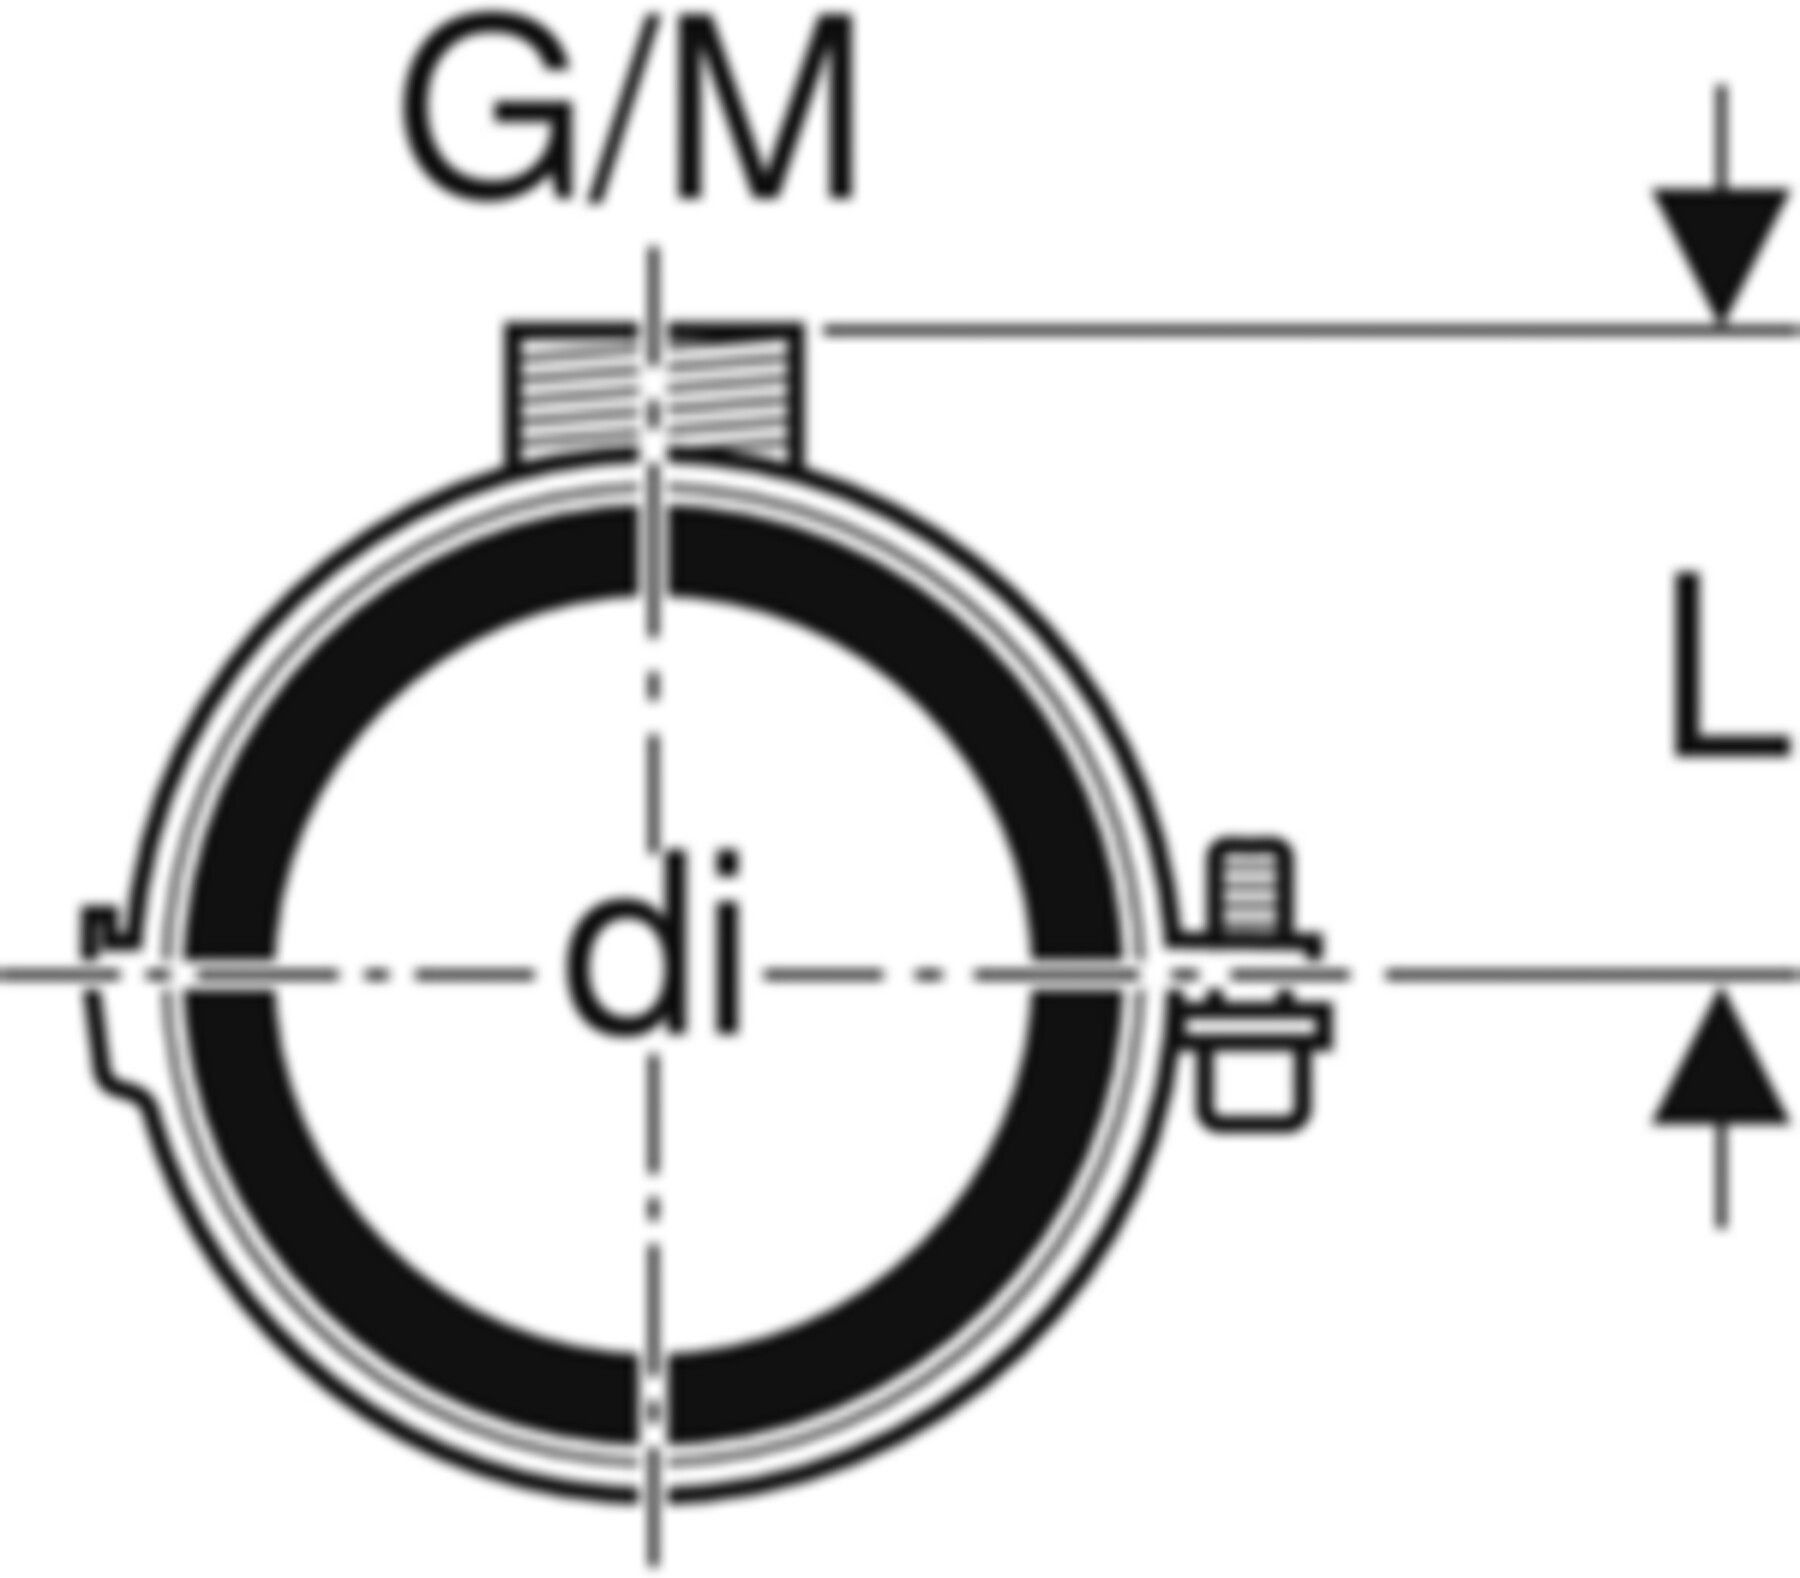 Rohrschelle mit Dämmeinlage d 75mm G/M 1/2"/M10 307.812.26.1 - Geberit-PE-Formstücke